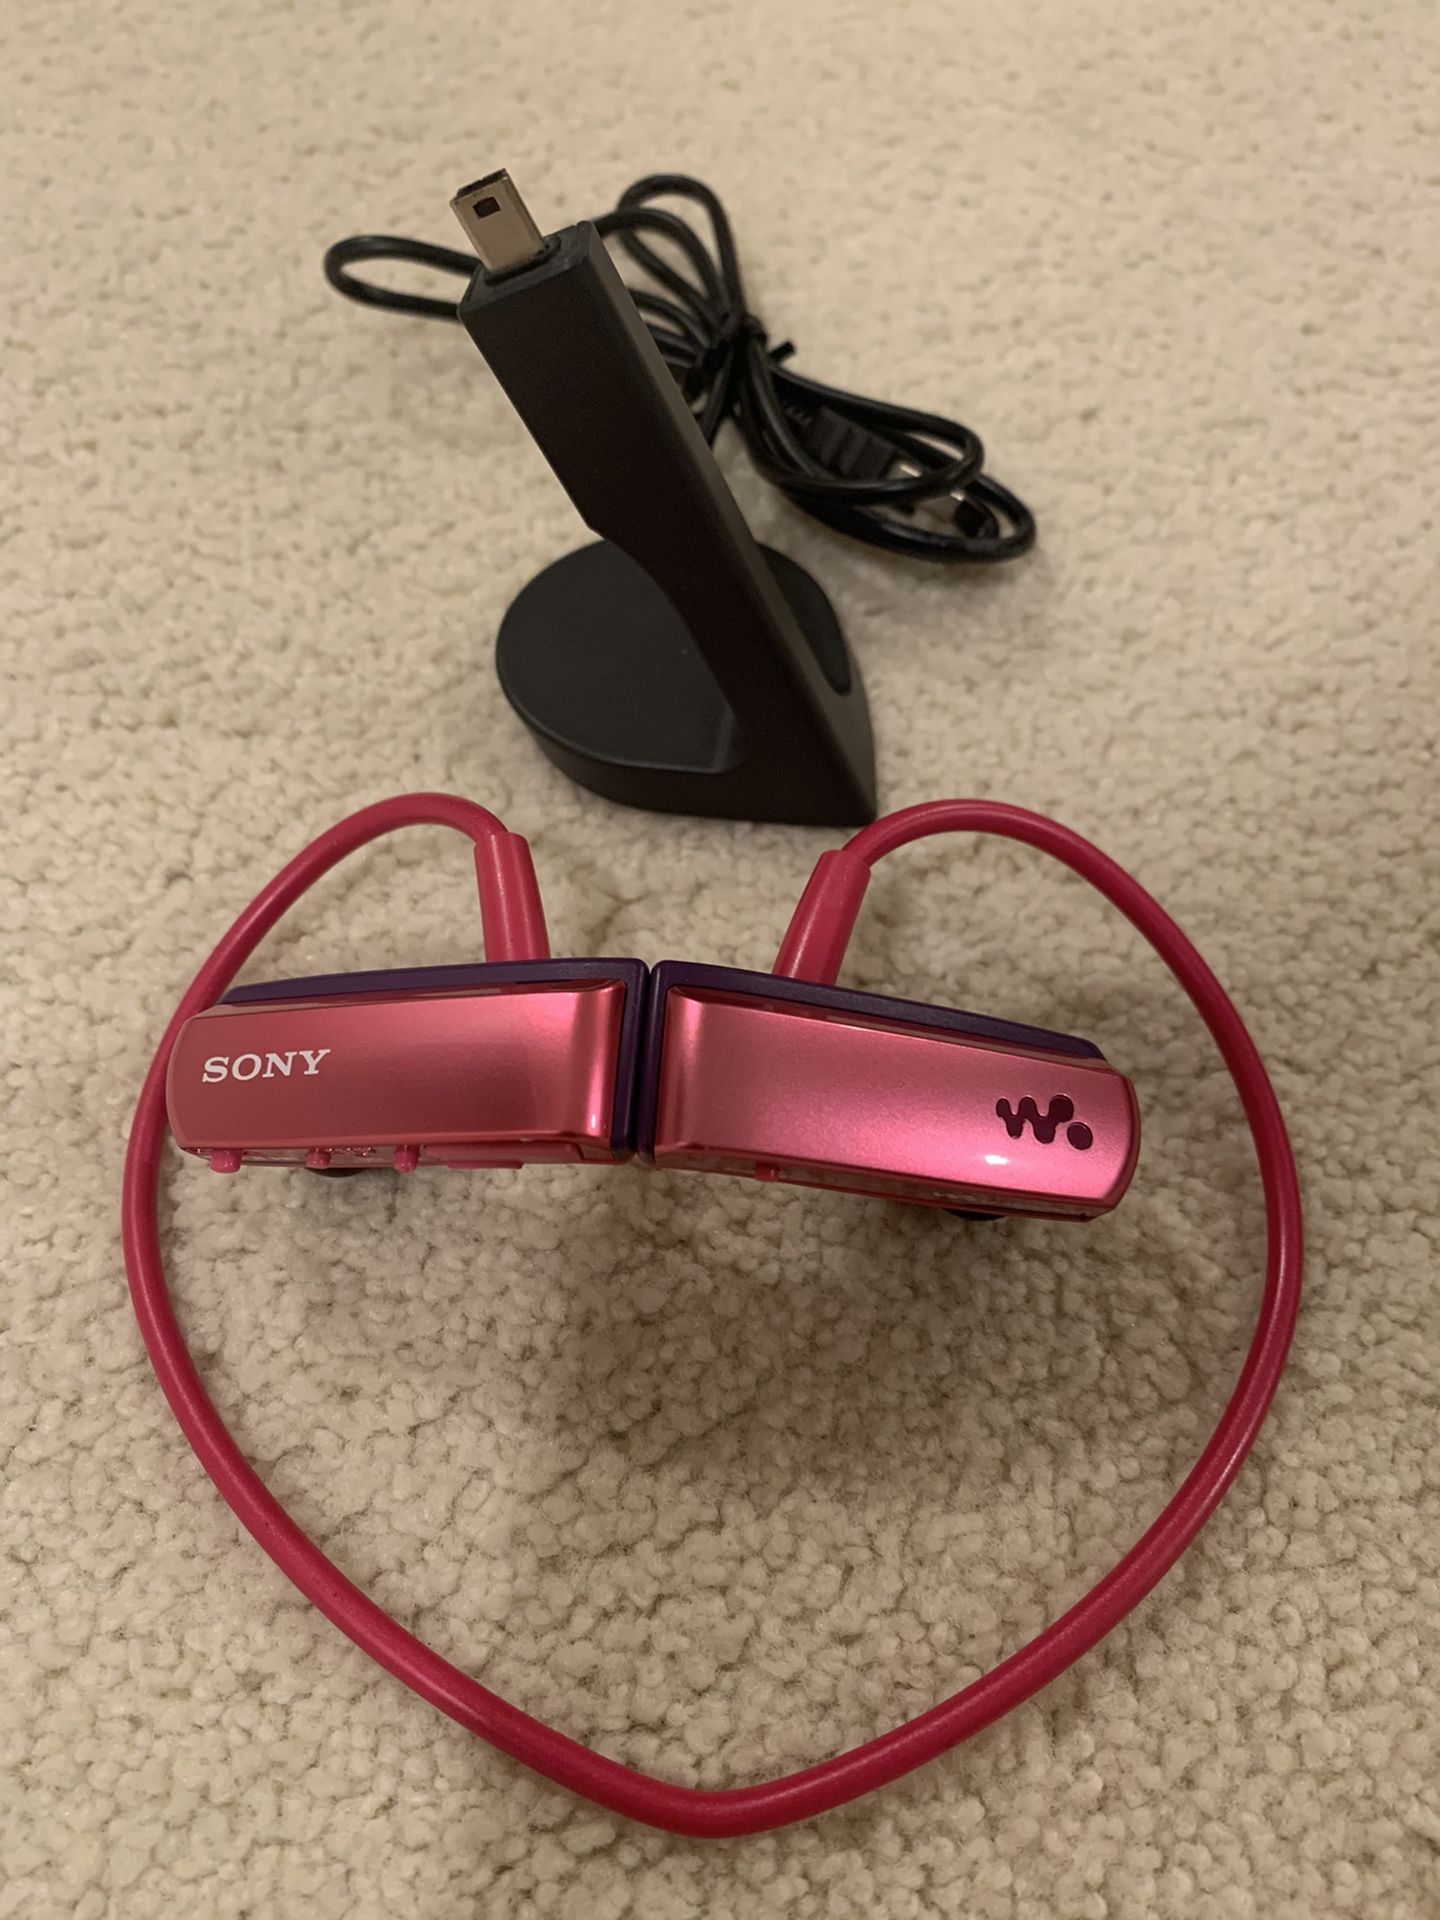 Sony headphones pink